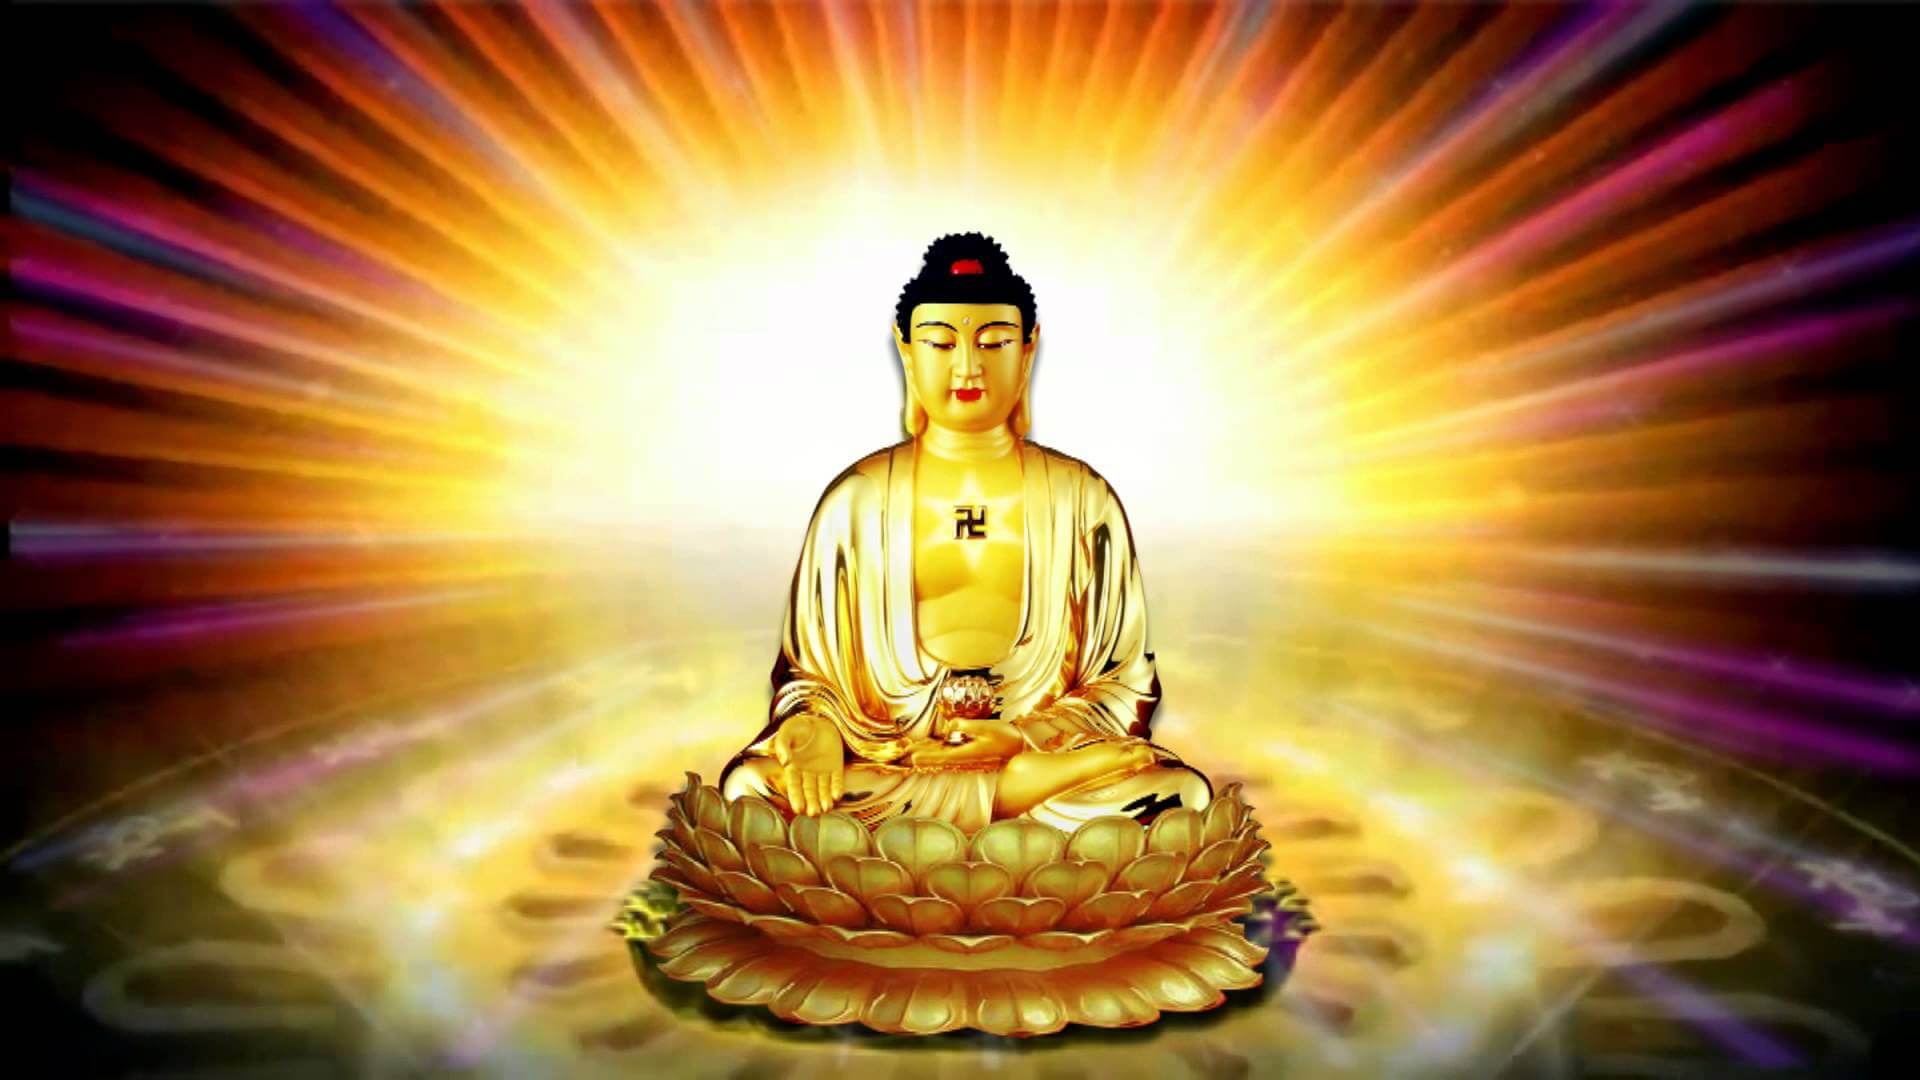 Ảnh Phật A Di Đà: Hãy chiêm ngưỡng vẻ đẹp thanh tịnh của Ảnh Phật A Di Đà để thấy rõ được sự hiện diện của một tinh thần vĩnh cửu trong cuộc đời con người. Ảnh còn giúp bạn có thêm động lực để tiếp tục cuộc hành trình của mình và trau dồi đức hạnh.